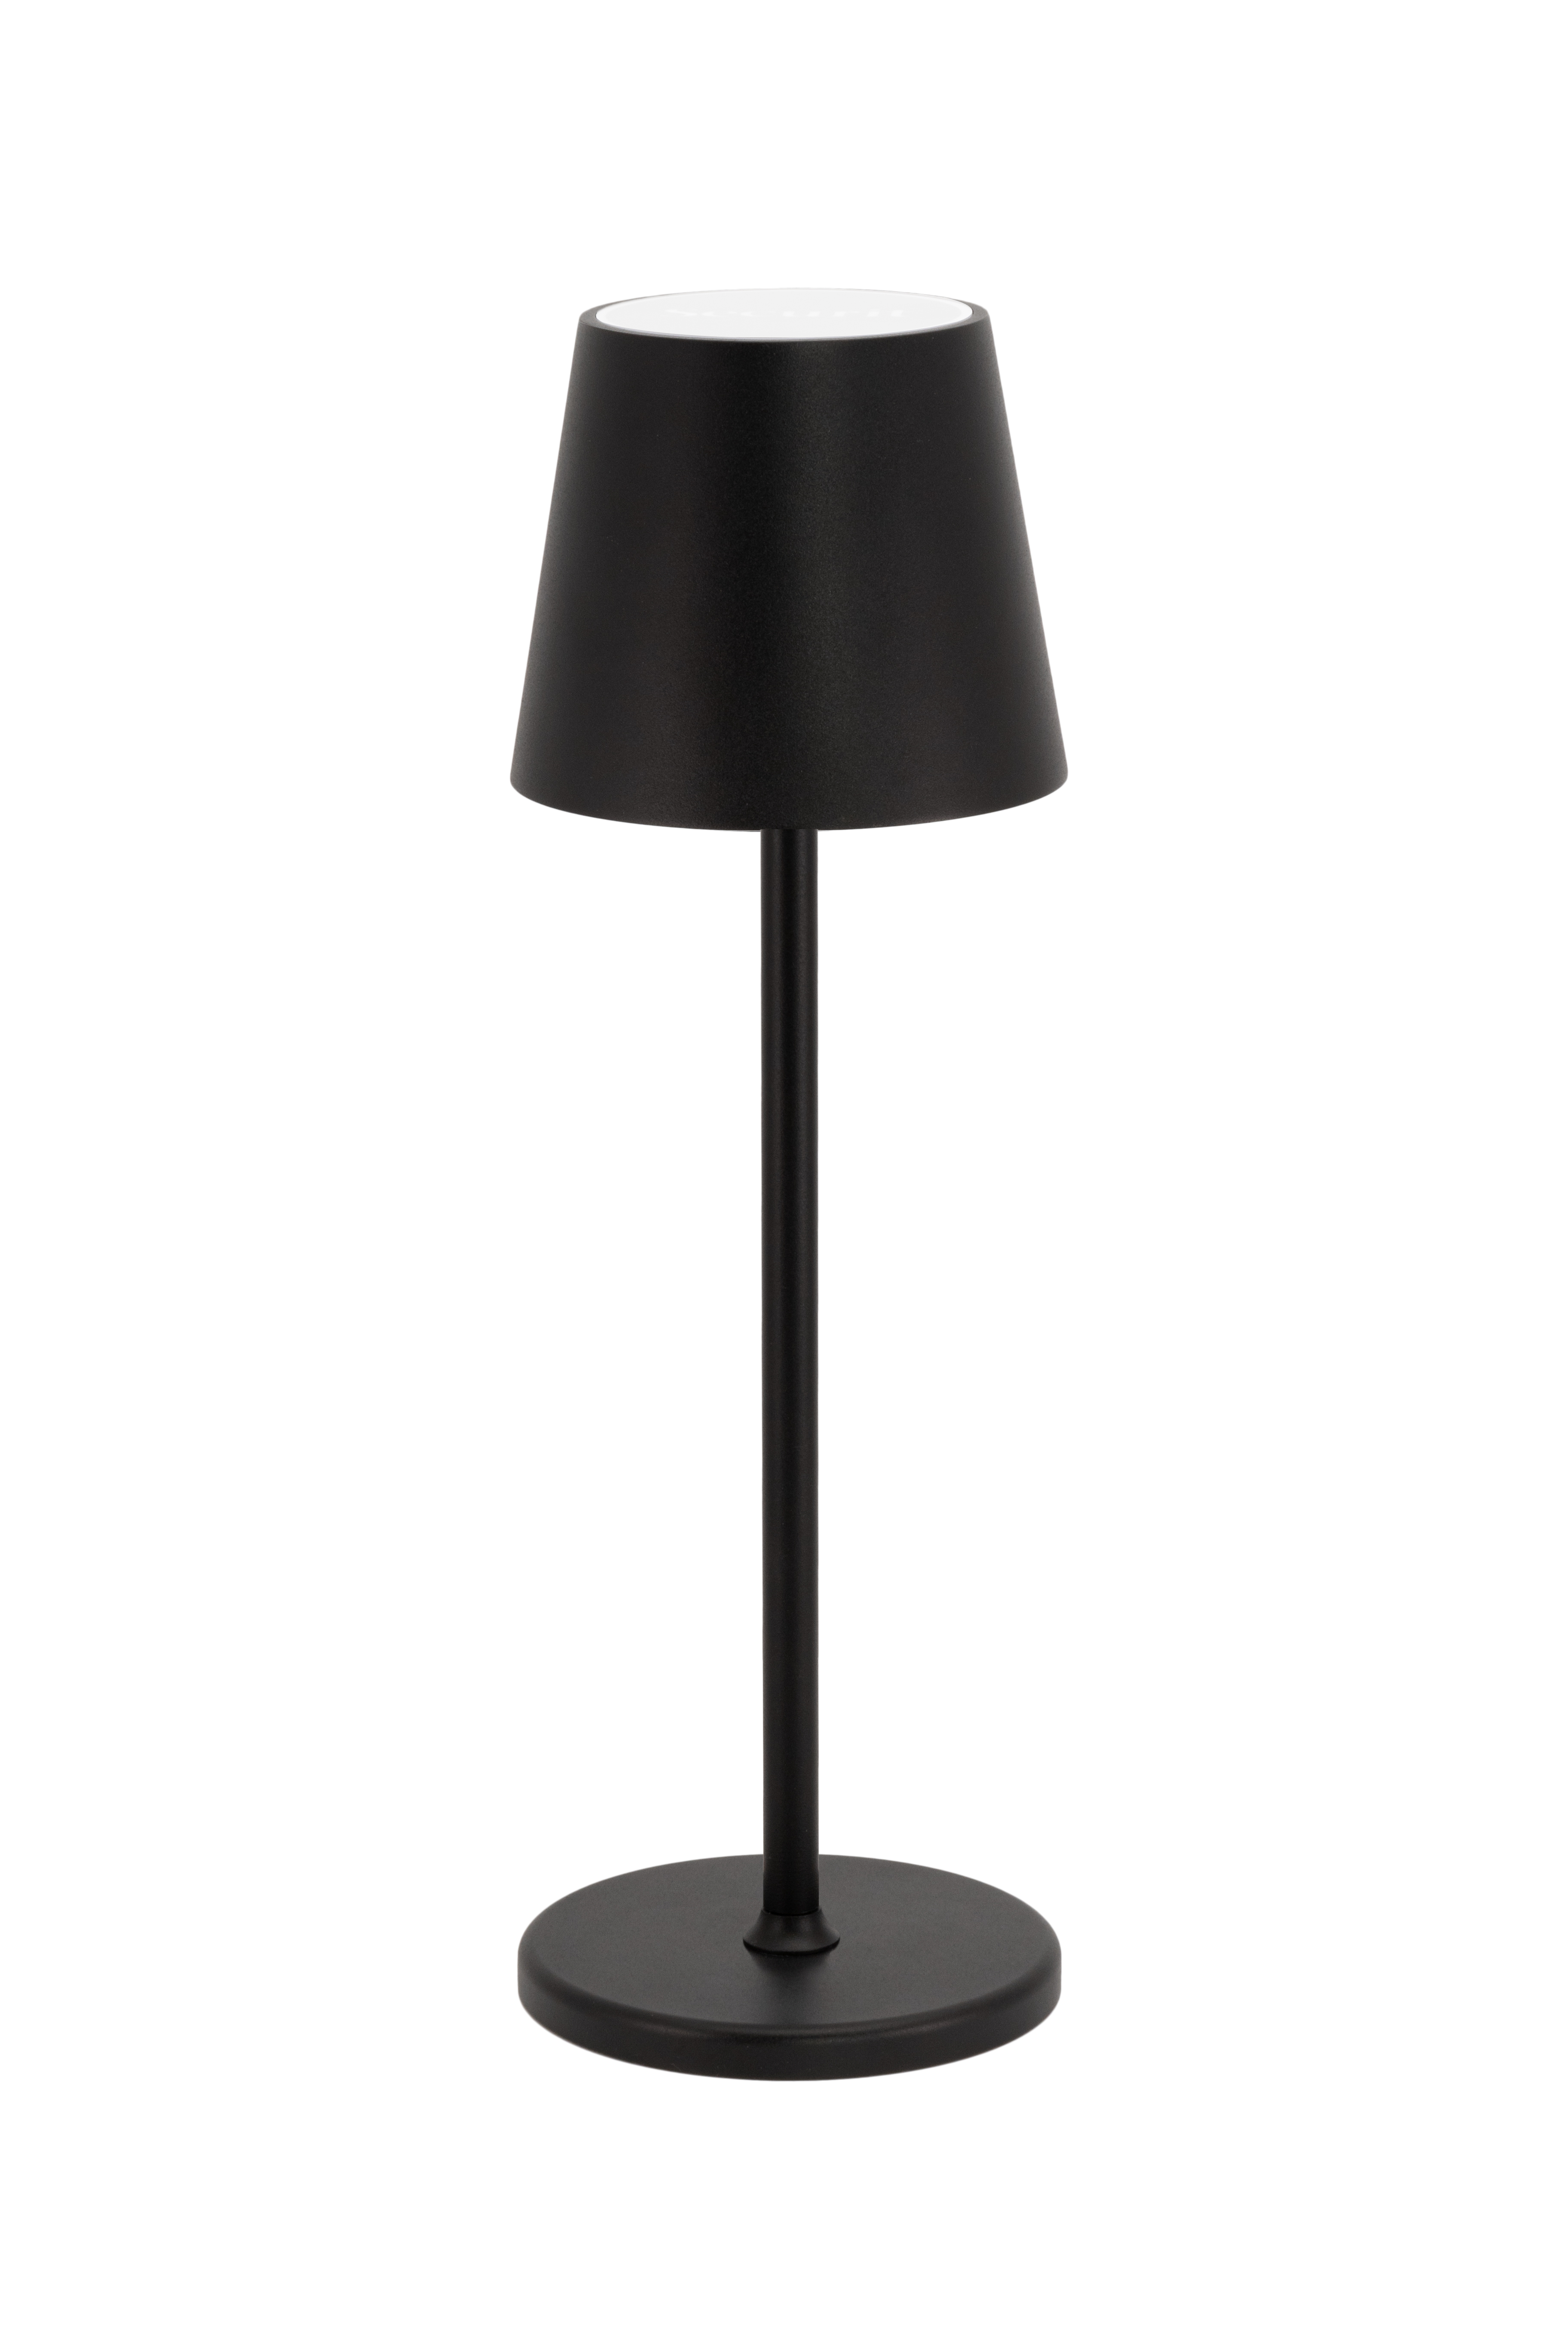 SECURIT Lampe de table FELINE LP-FE-BL noir, batterie, dimmable